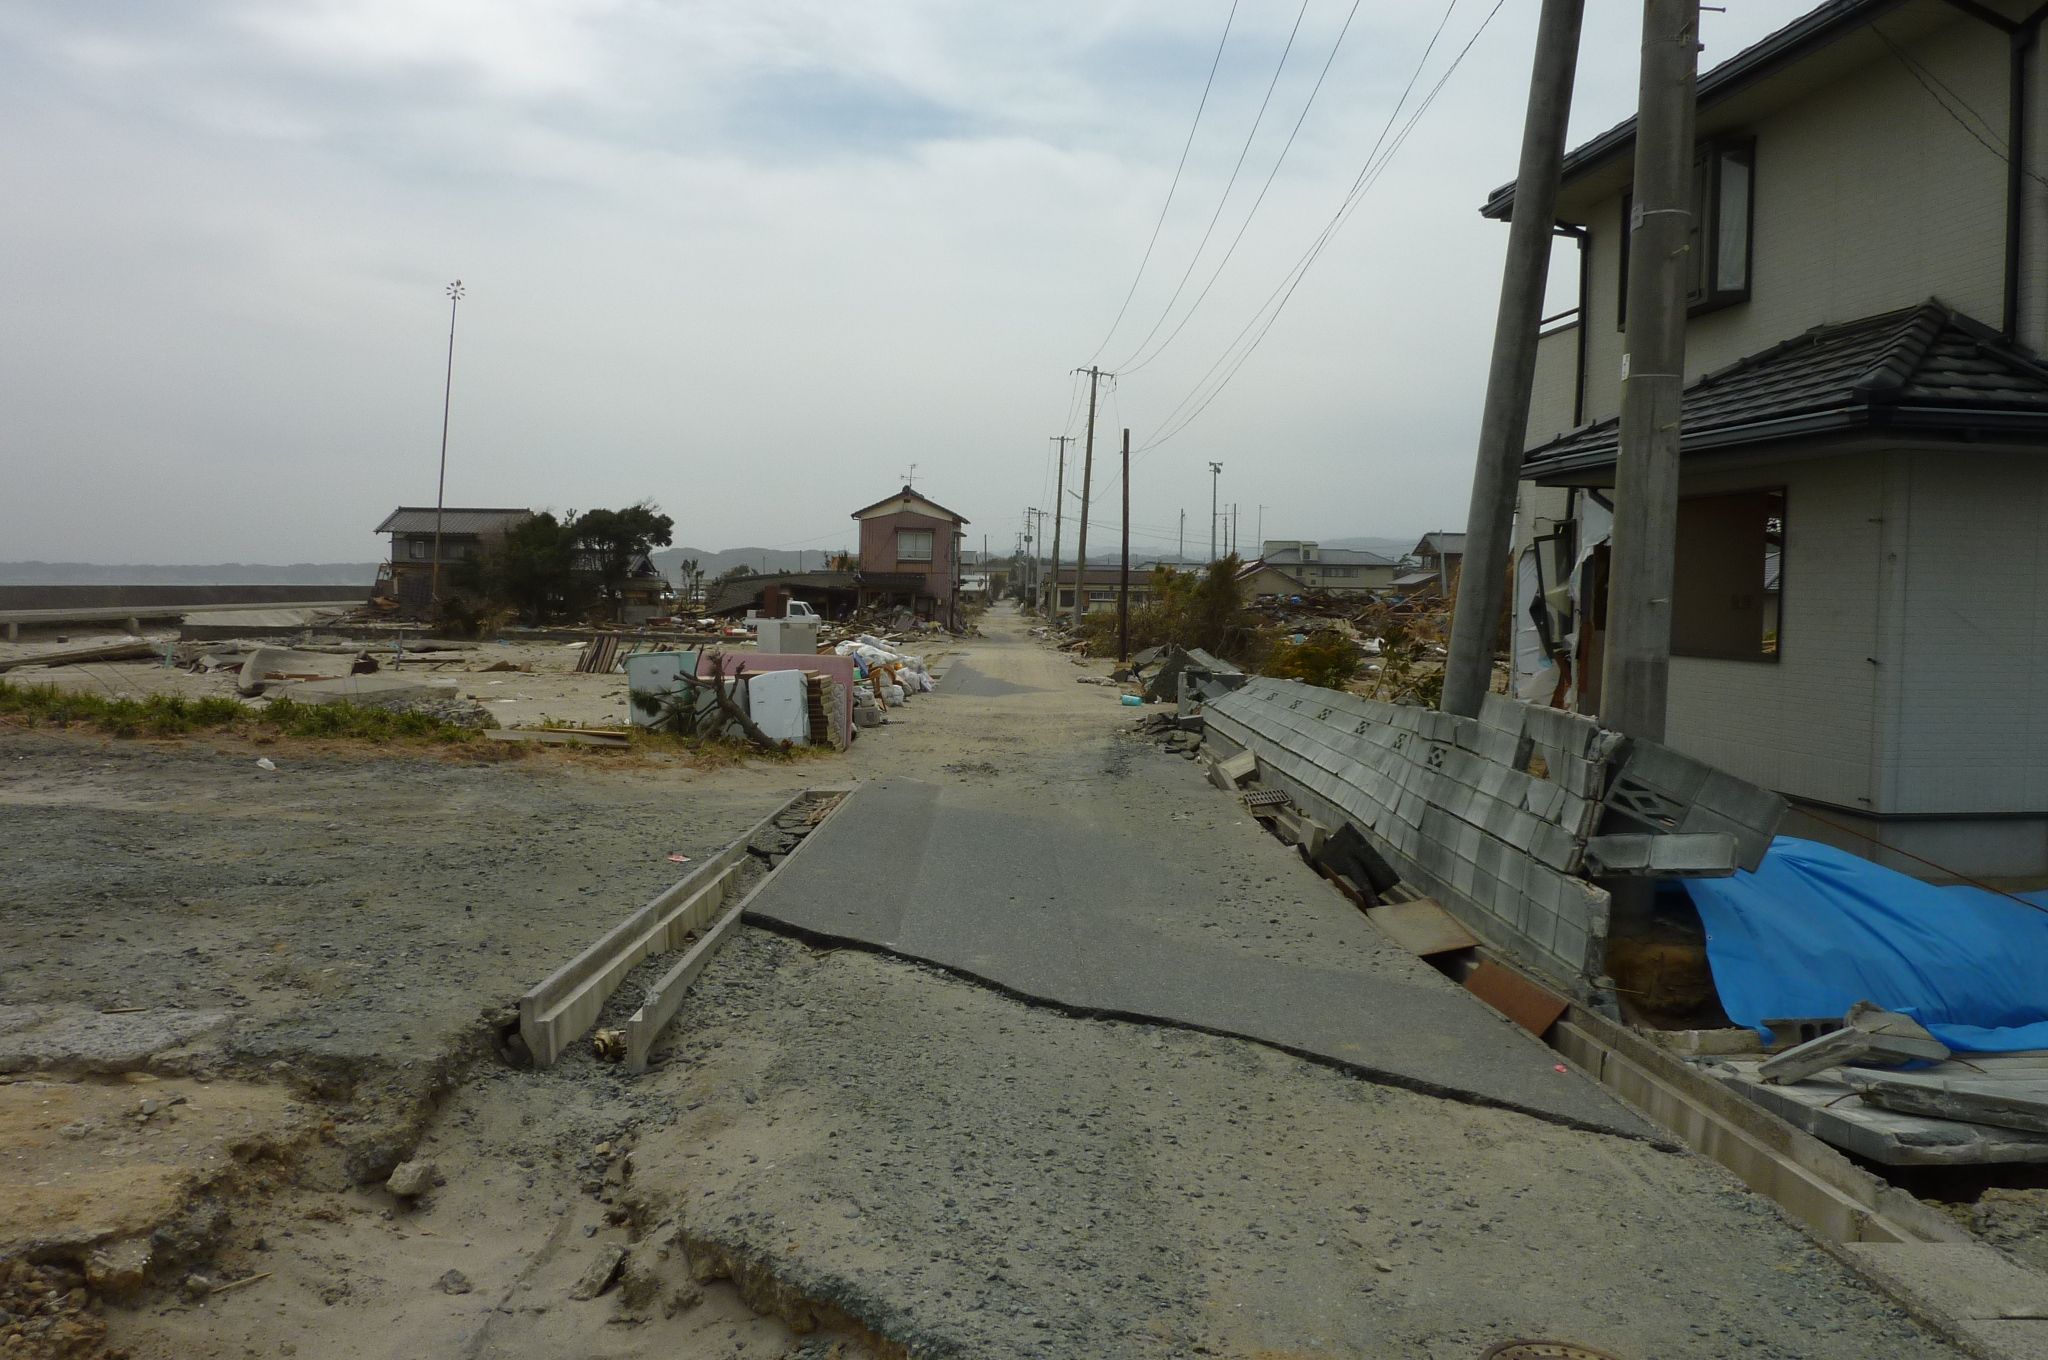 8 東日本大震災の津波で被災した須賀集落(平成23年4月8日、佐川紘一氏撮影)